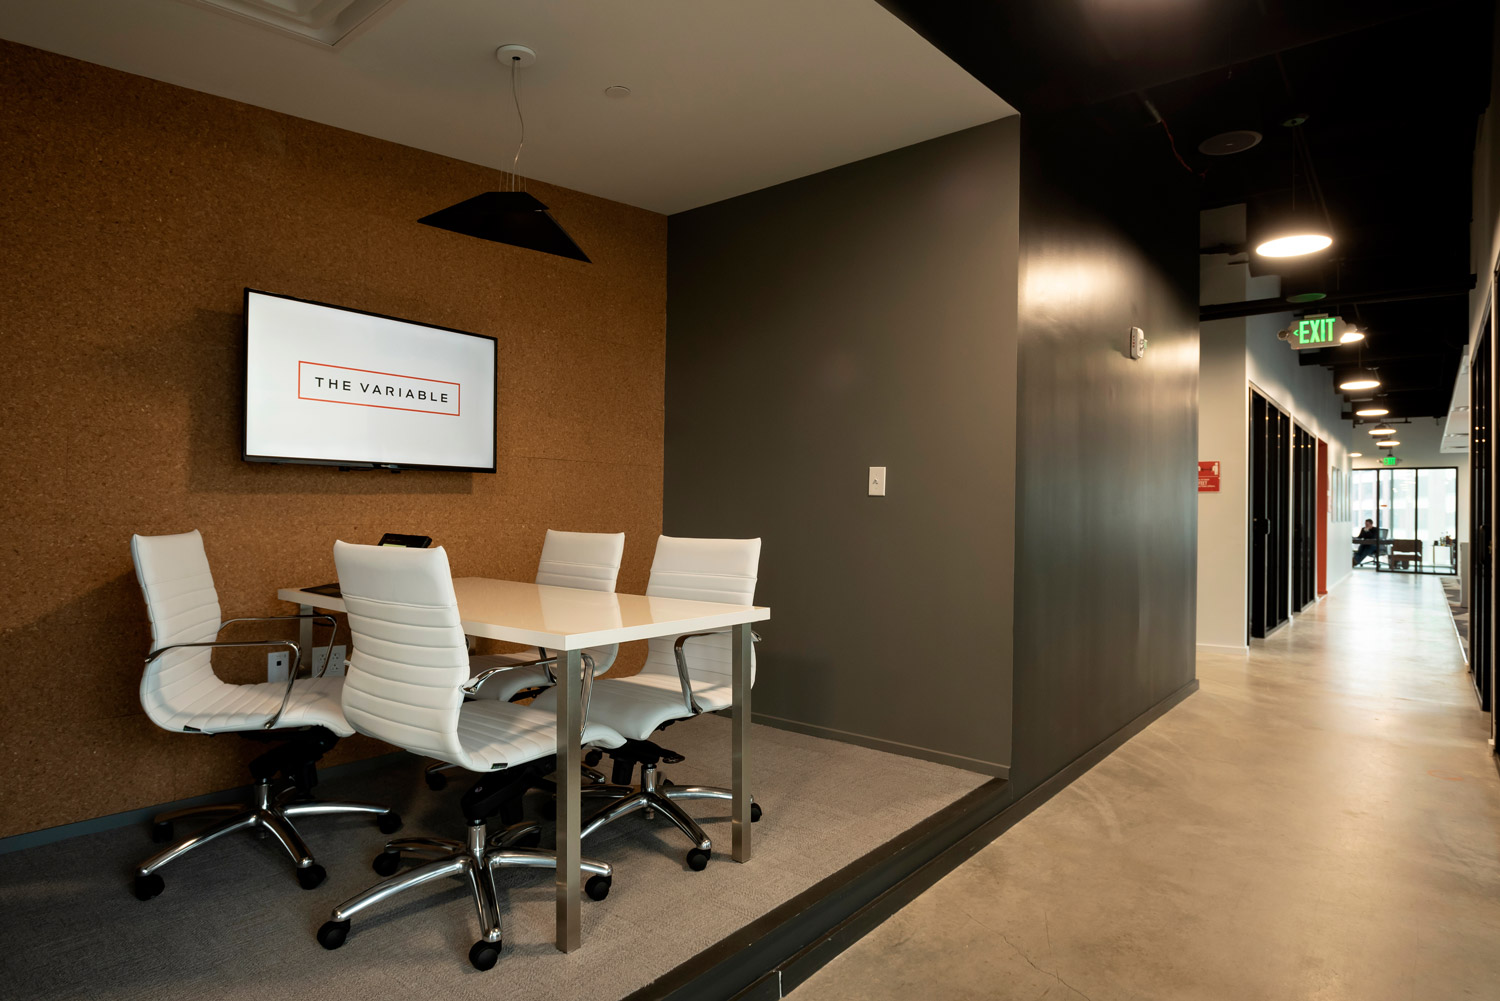 Vignette d'un couloir de bureau avec une table de conférence et un écran mural numérique.